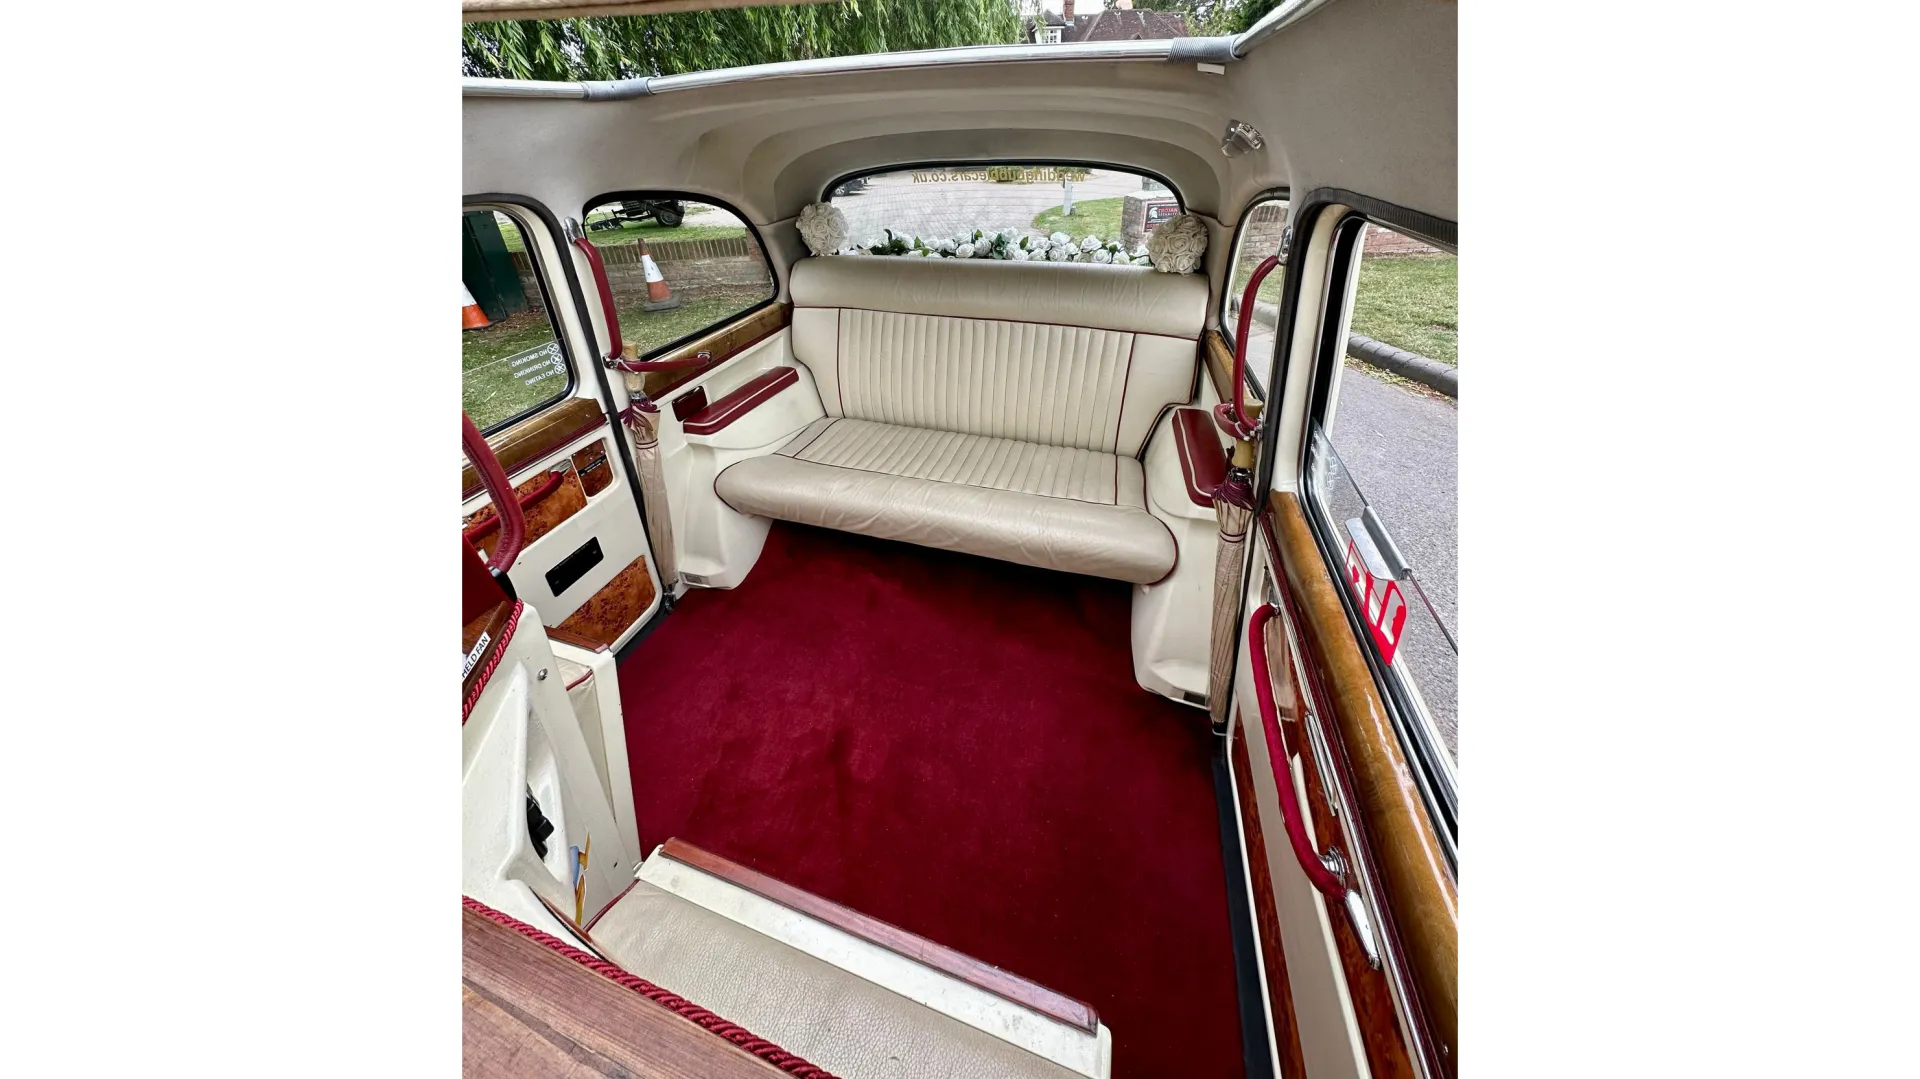 interior of classic taxi cab with cream interior and burgundy carpet